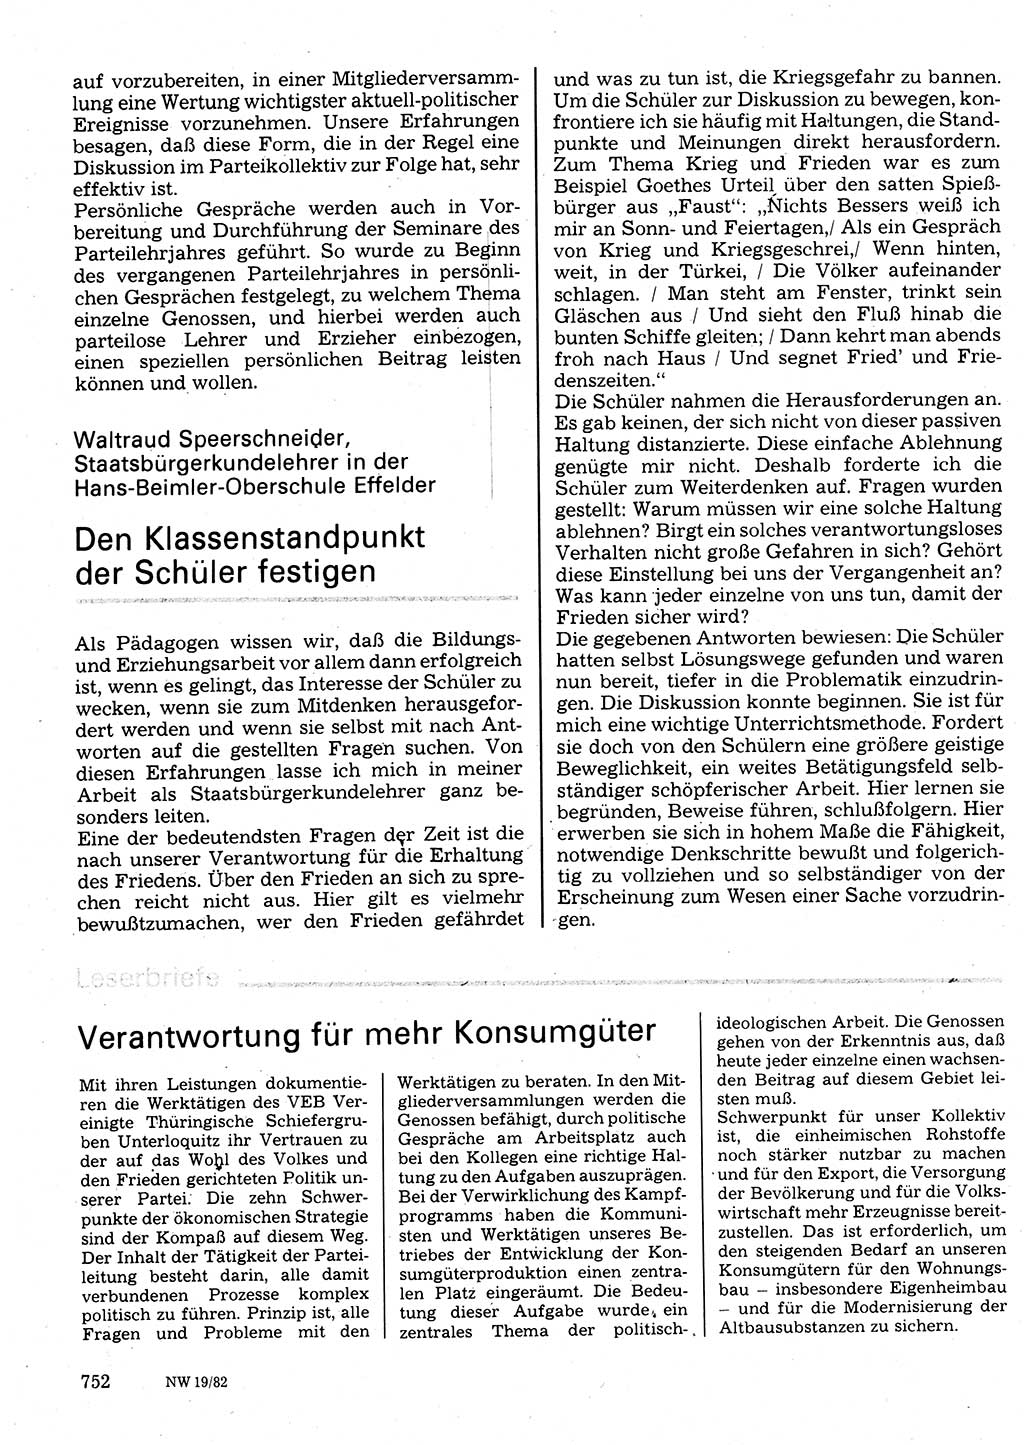 Neuer Weg (NW), Organ des Zentralkomitees (ZK) der SED (Sozialistische Einheitspartei Deutschlands) für Fragen des Parteilebens, 37. Jahrgang [Deutsche Demokratische Republik (DDR)] 1982, Seite 752 (NW ZK SED DDR 1982, S. 752)